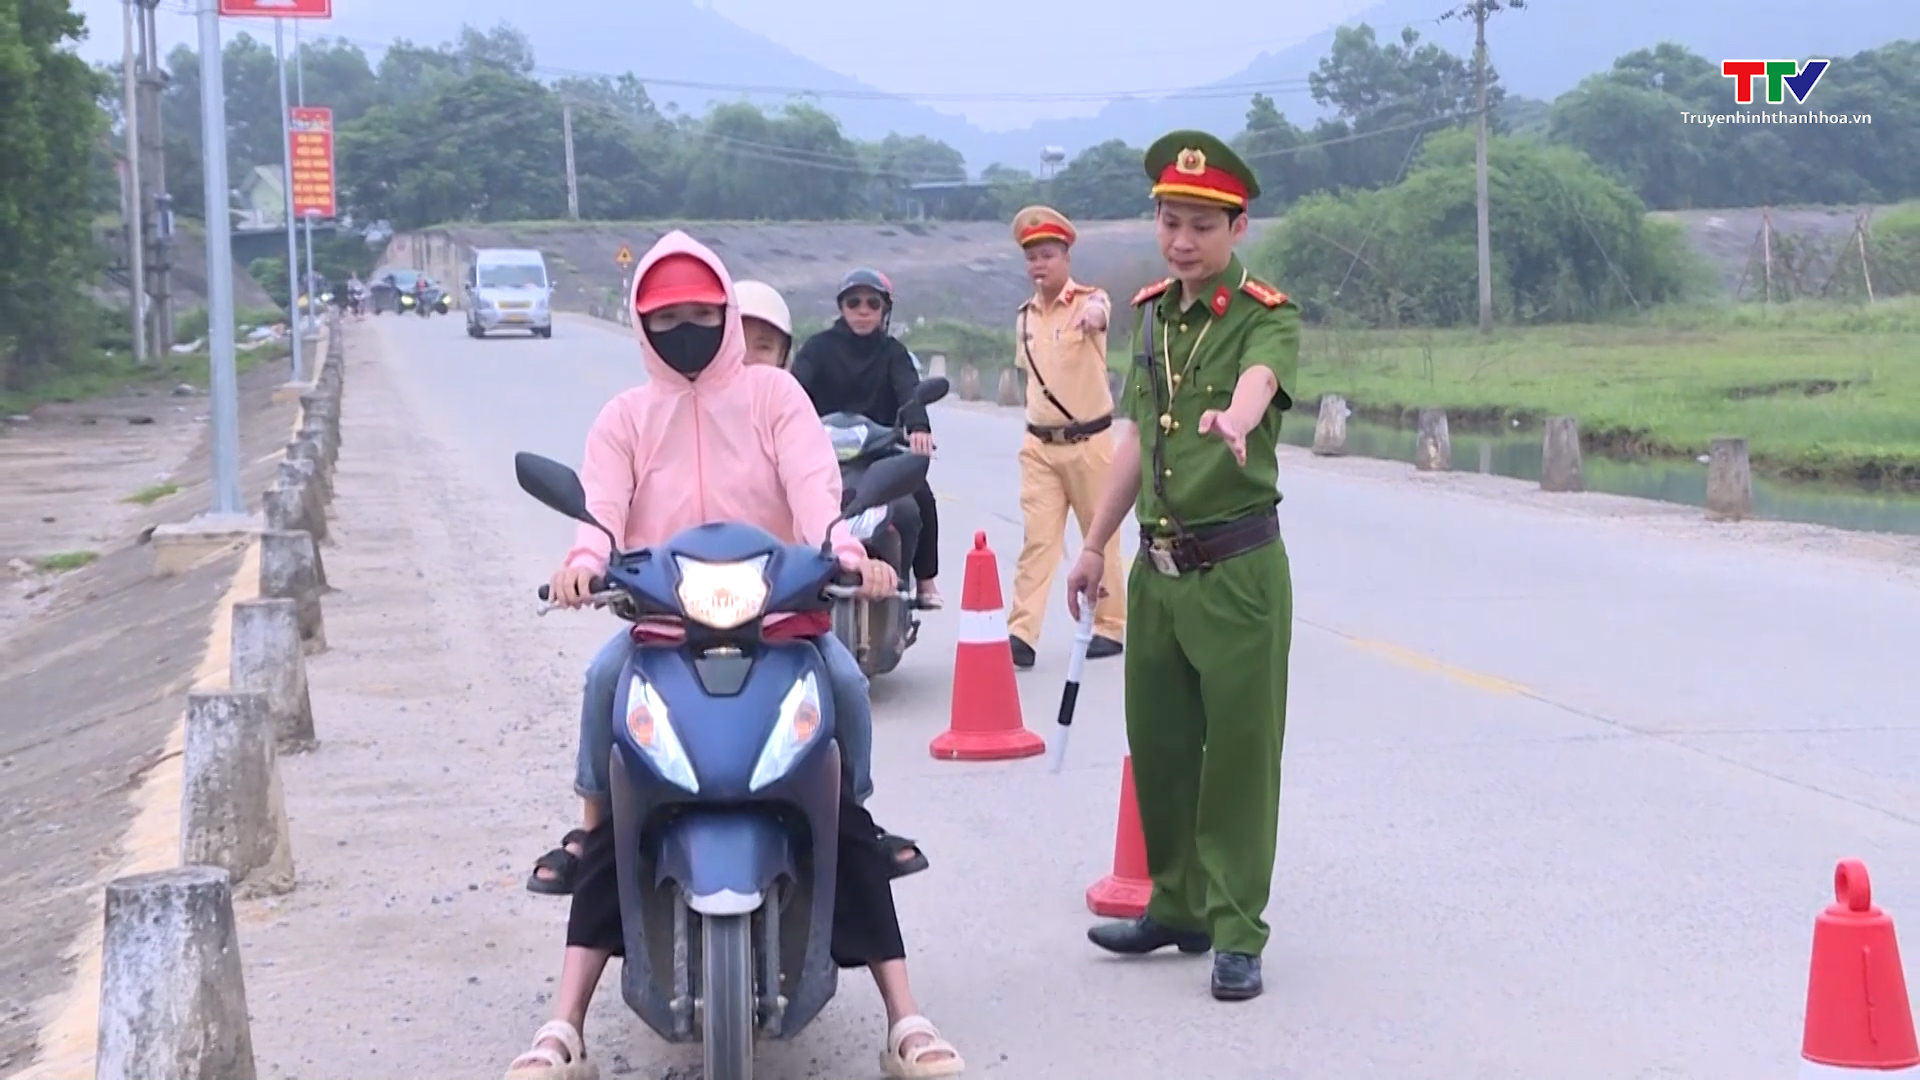 Công an huyện Như Thanh xử lý người điều khiển mô tô, xe gắn máy vi phạm giao thông- Ảnh 3.